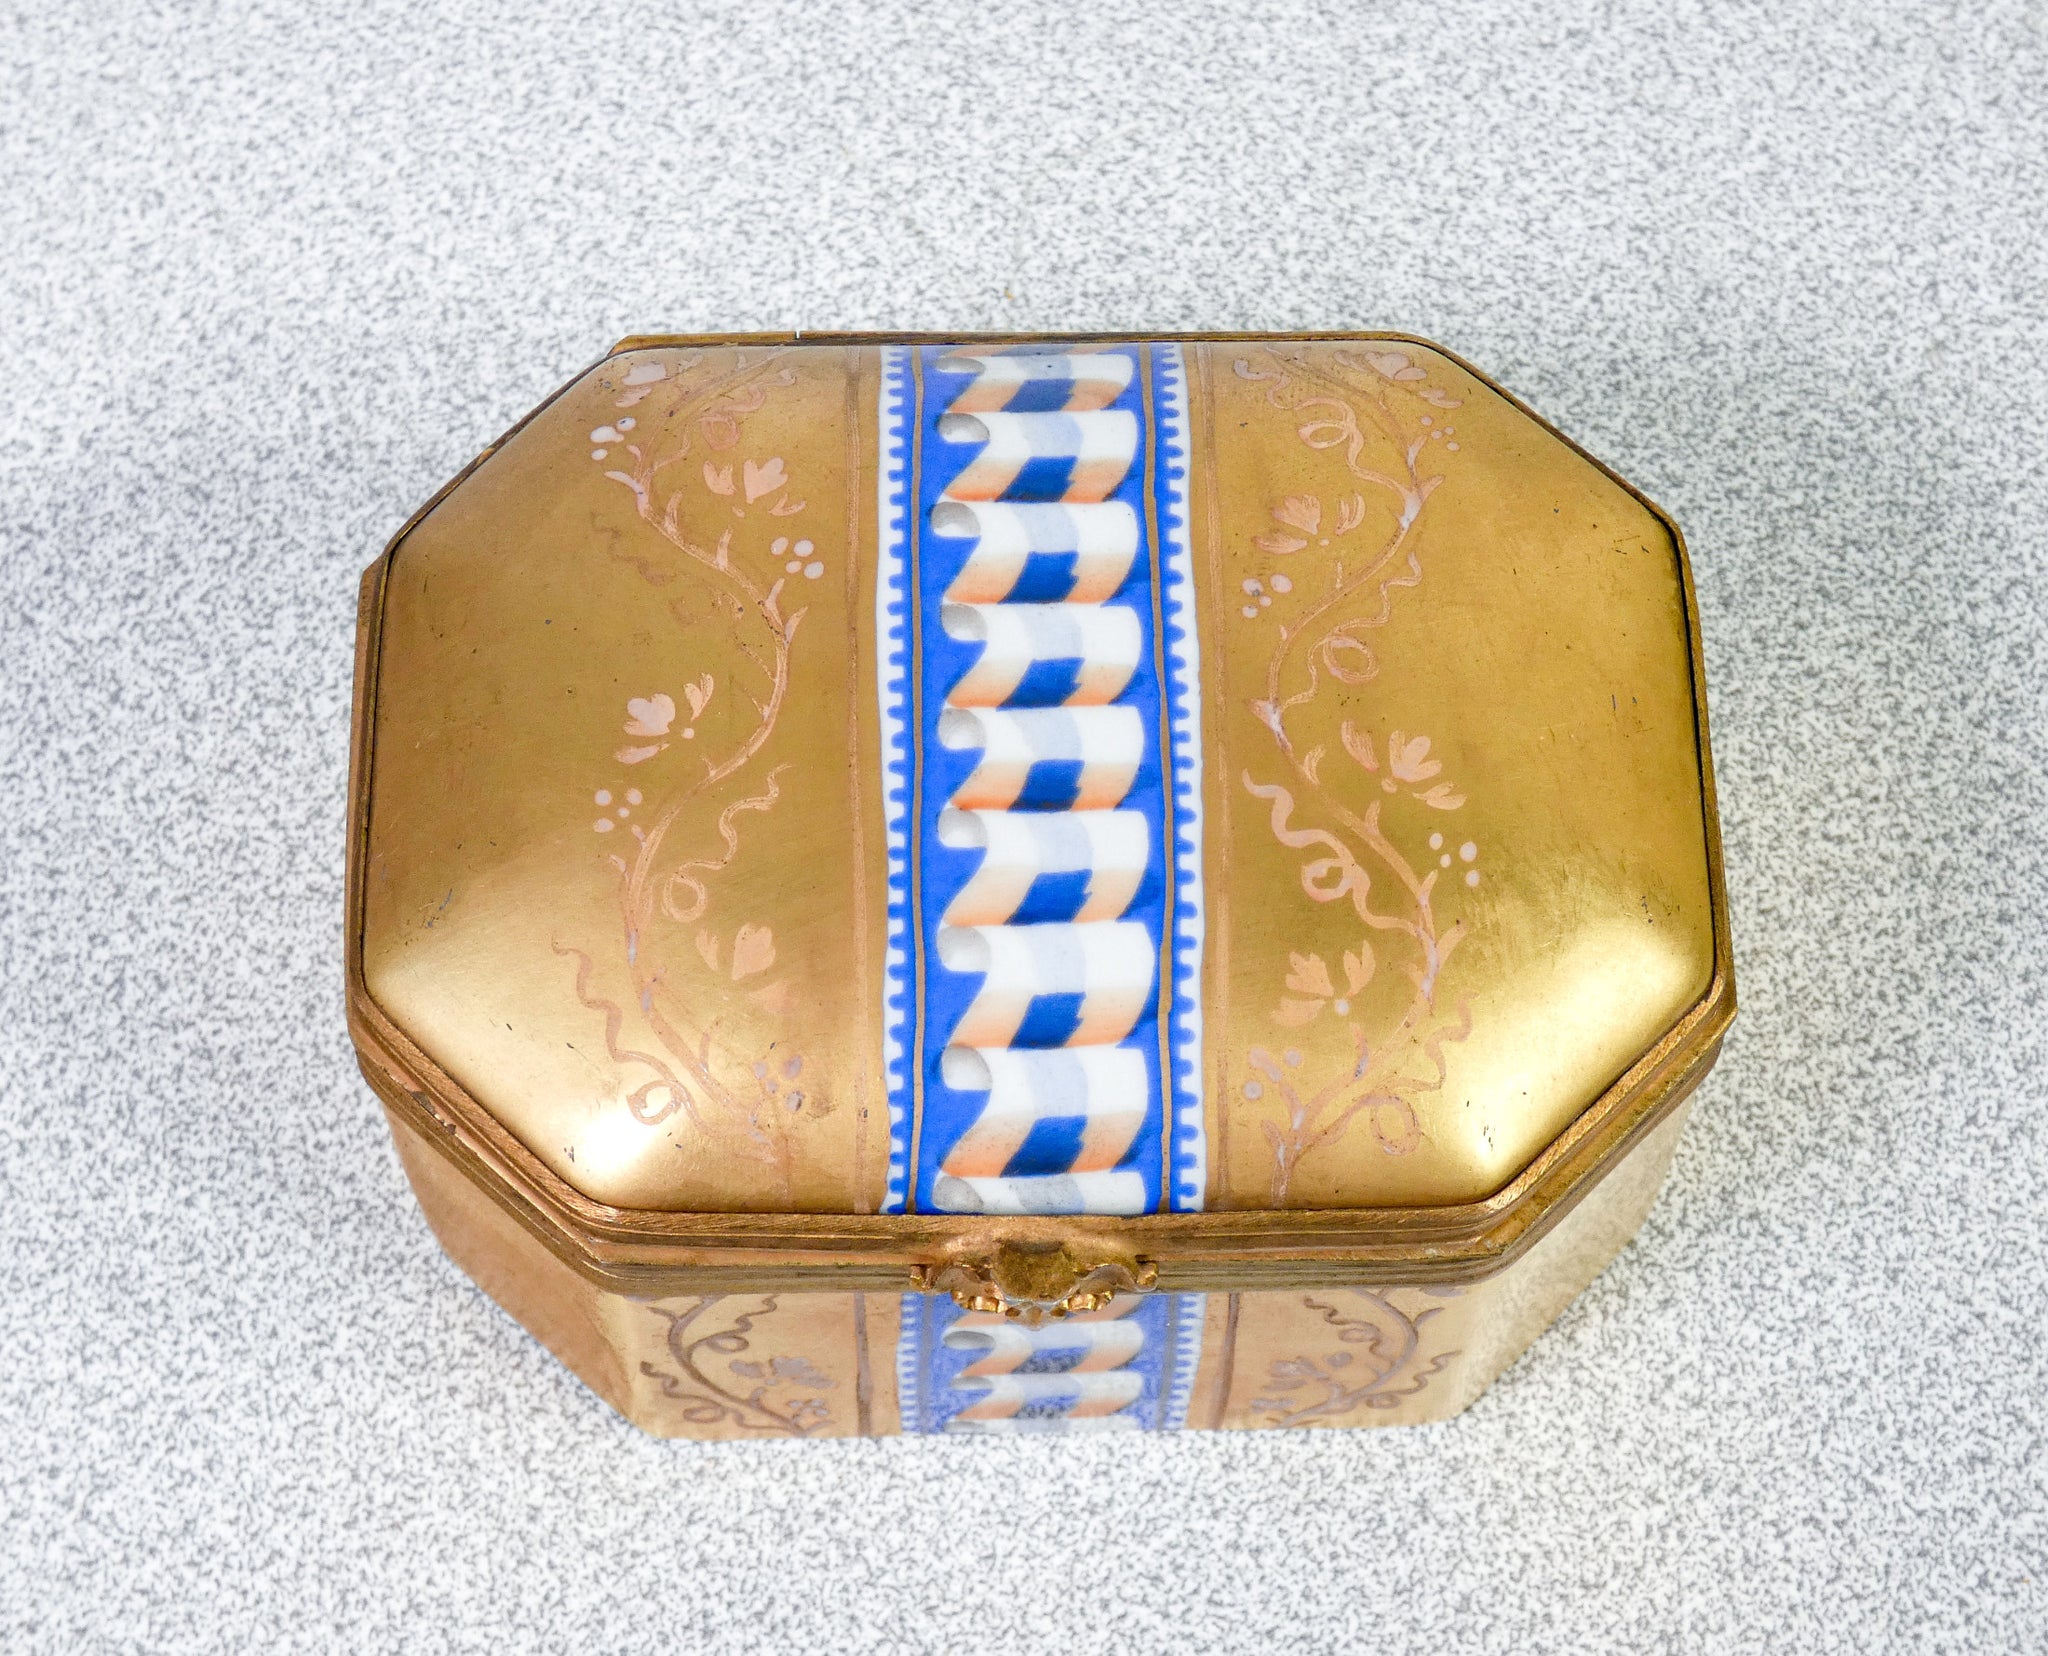 scatola ceramica sevres dipinta a mano scrigno portagioie porcellana epoca 1900